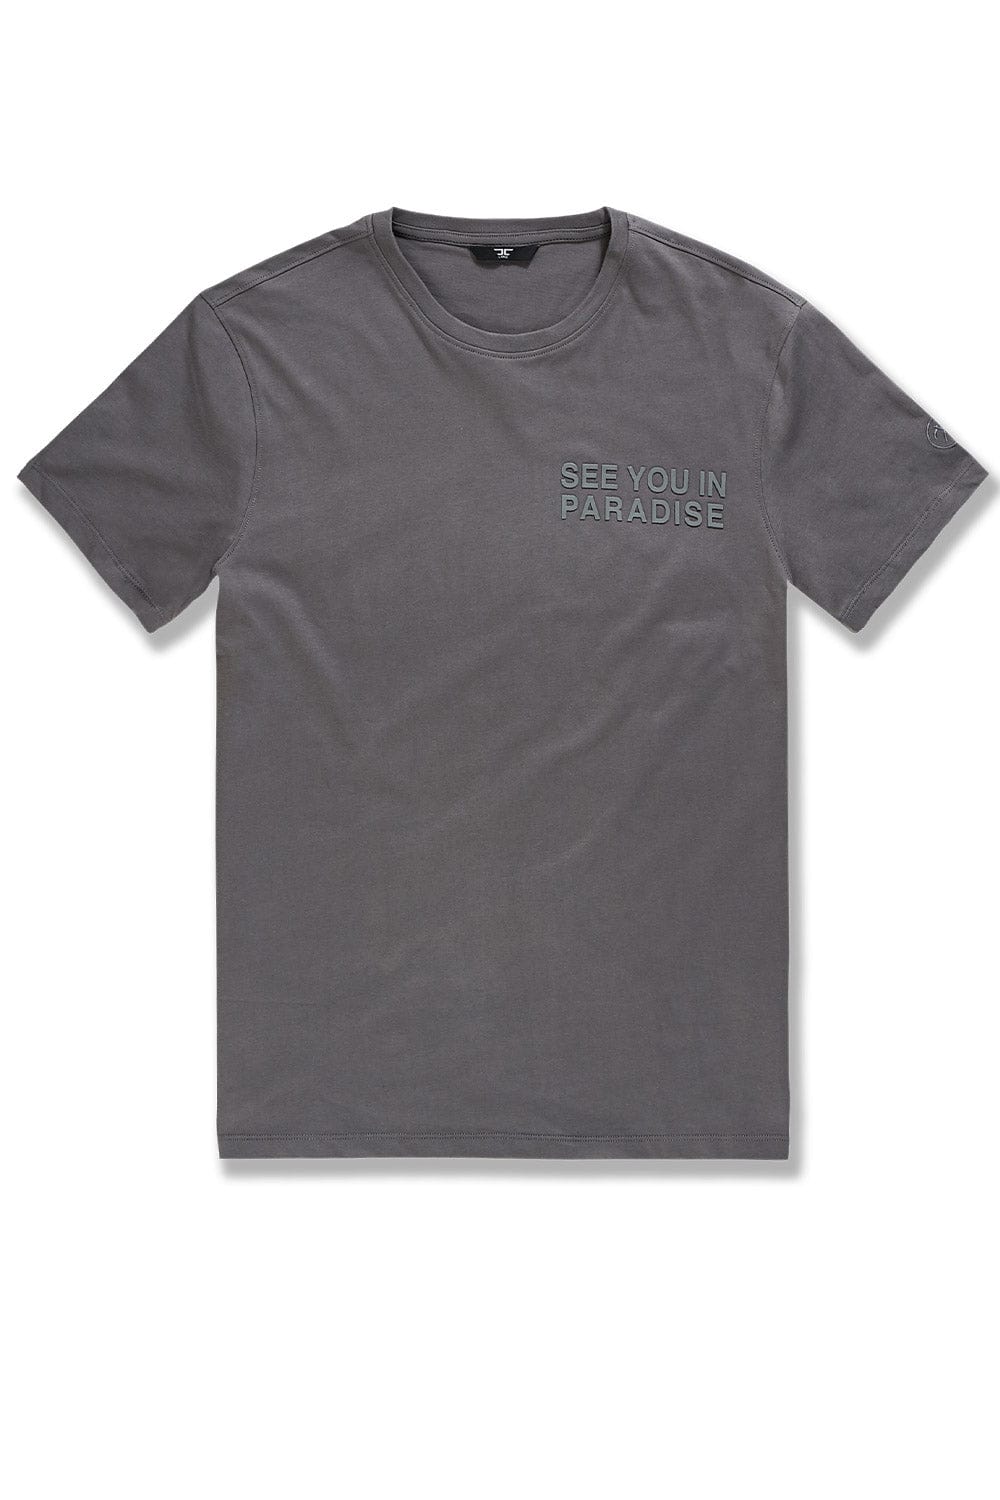 Jordan Craig Paradise Tonal T-Shirt Charcoal / S